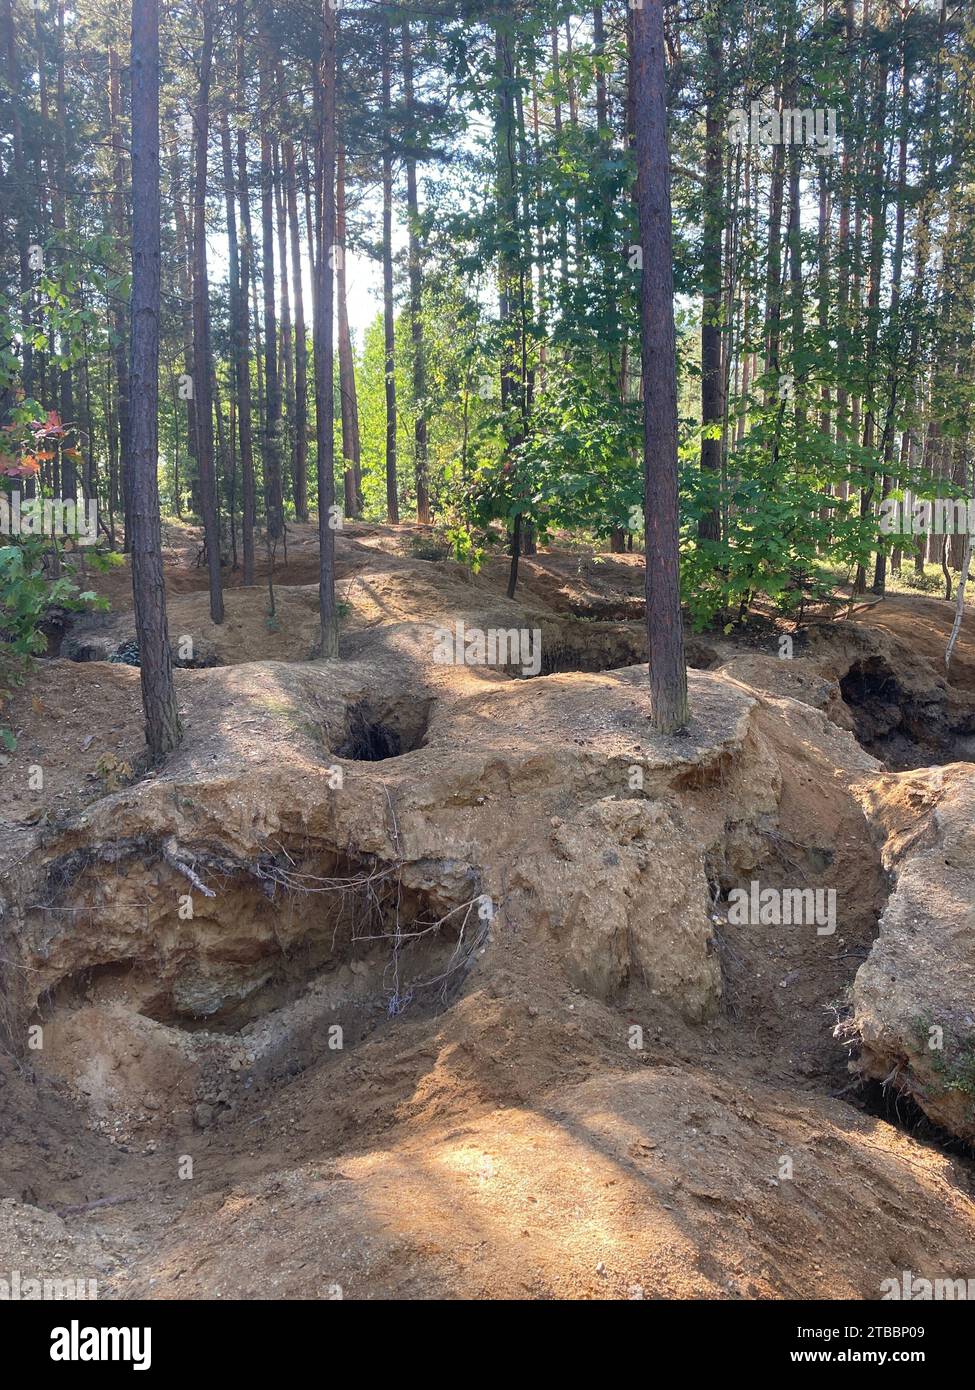 Foresta danneggiata da cacciatori di moldavite illegali nella Boemia meridionale. Buchi nel terreno lasciati dai minatori nel bosco di Nesměň. Foto Stock